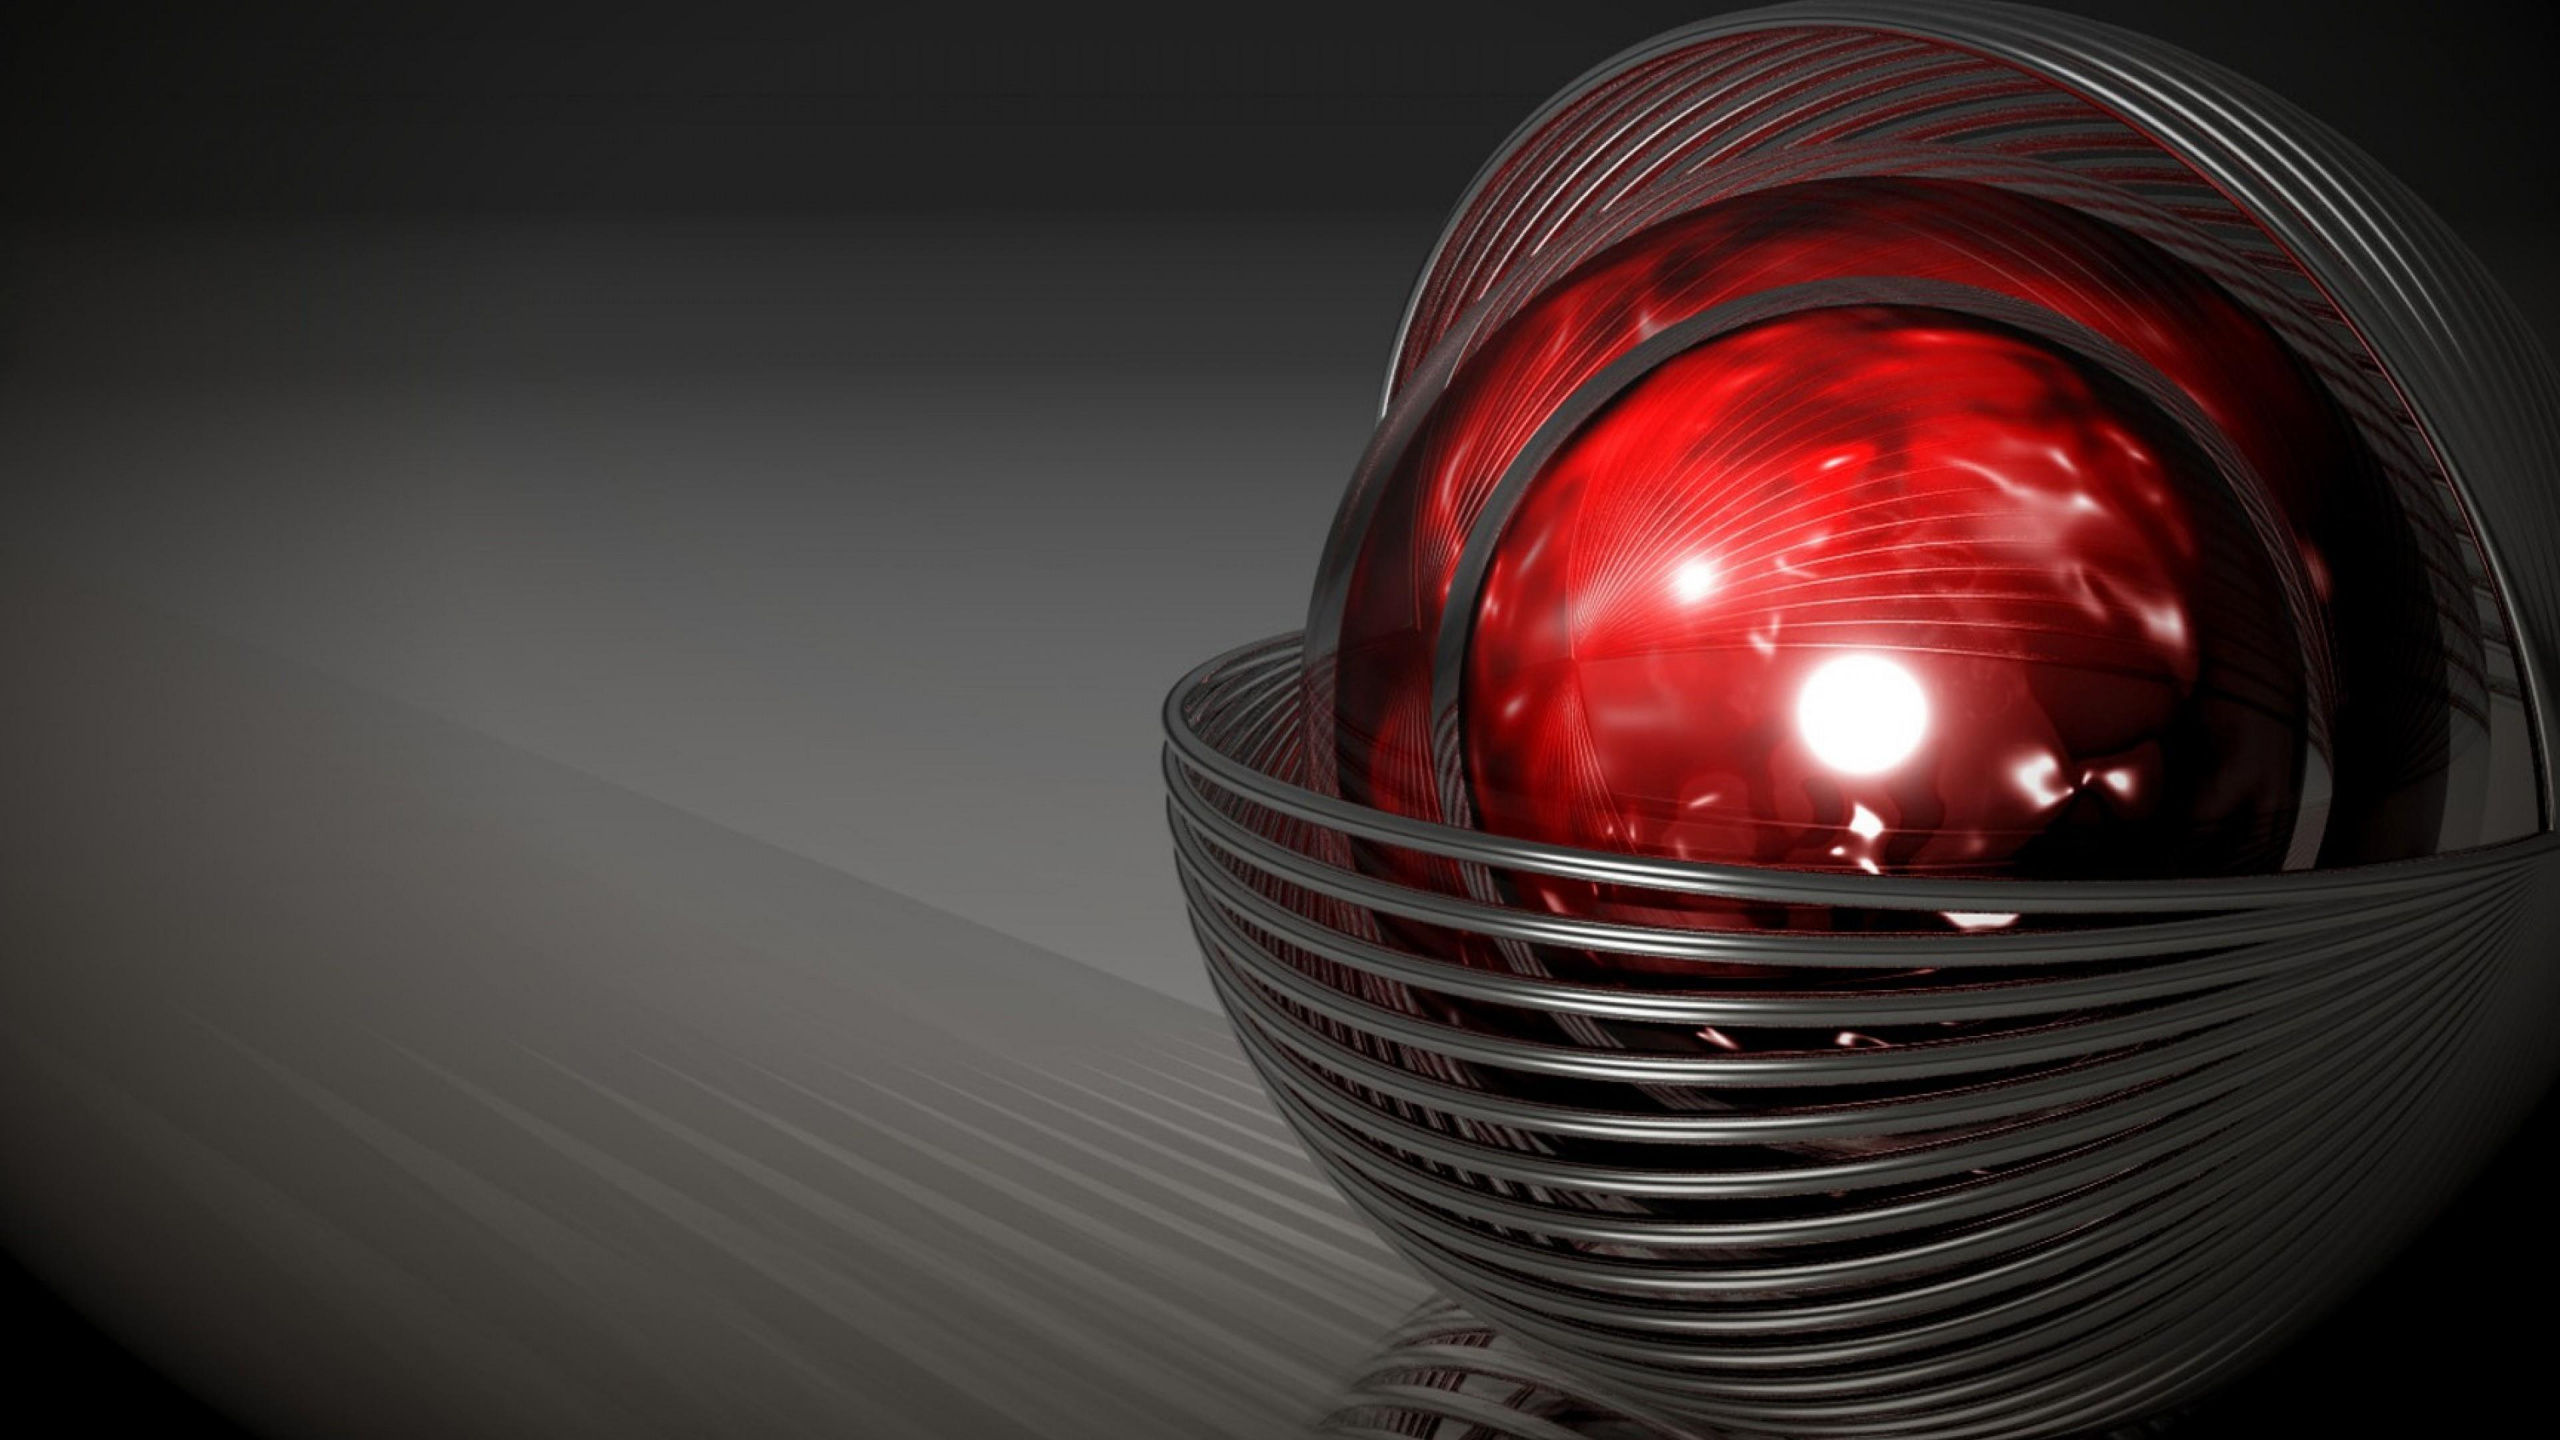 红色的, 车灯, 光, 球体, 反射 壁纸 2560x1440 允许